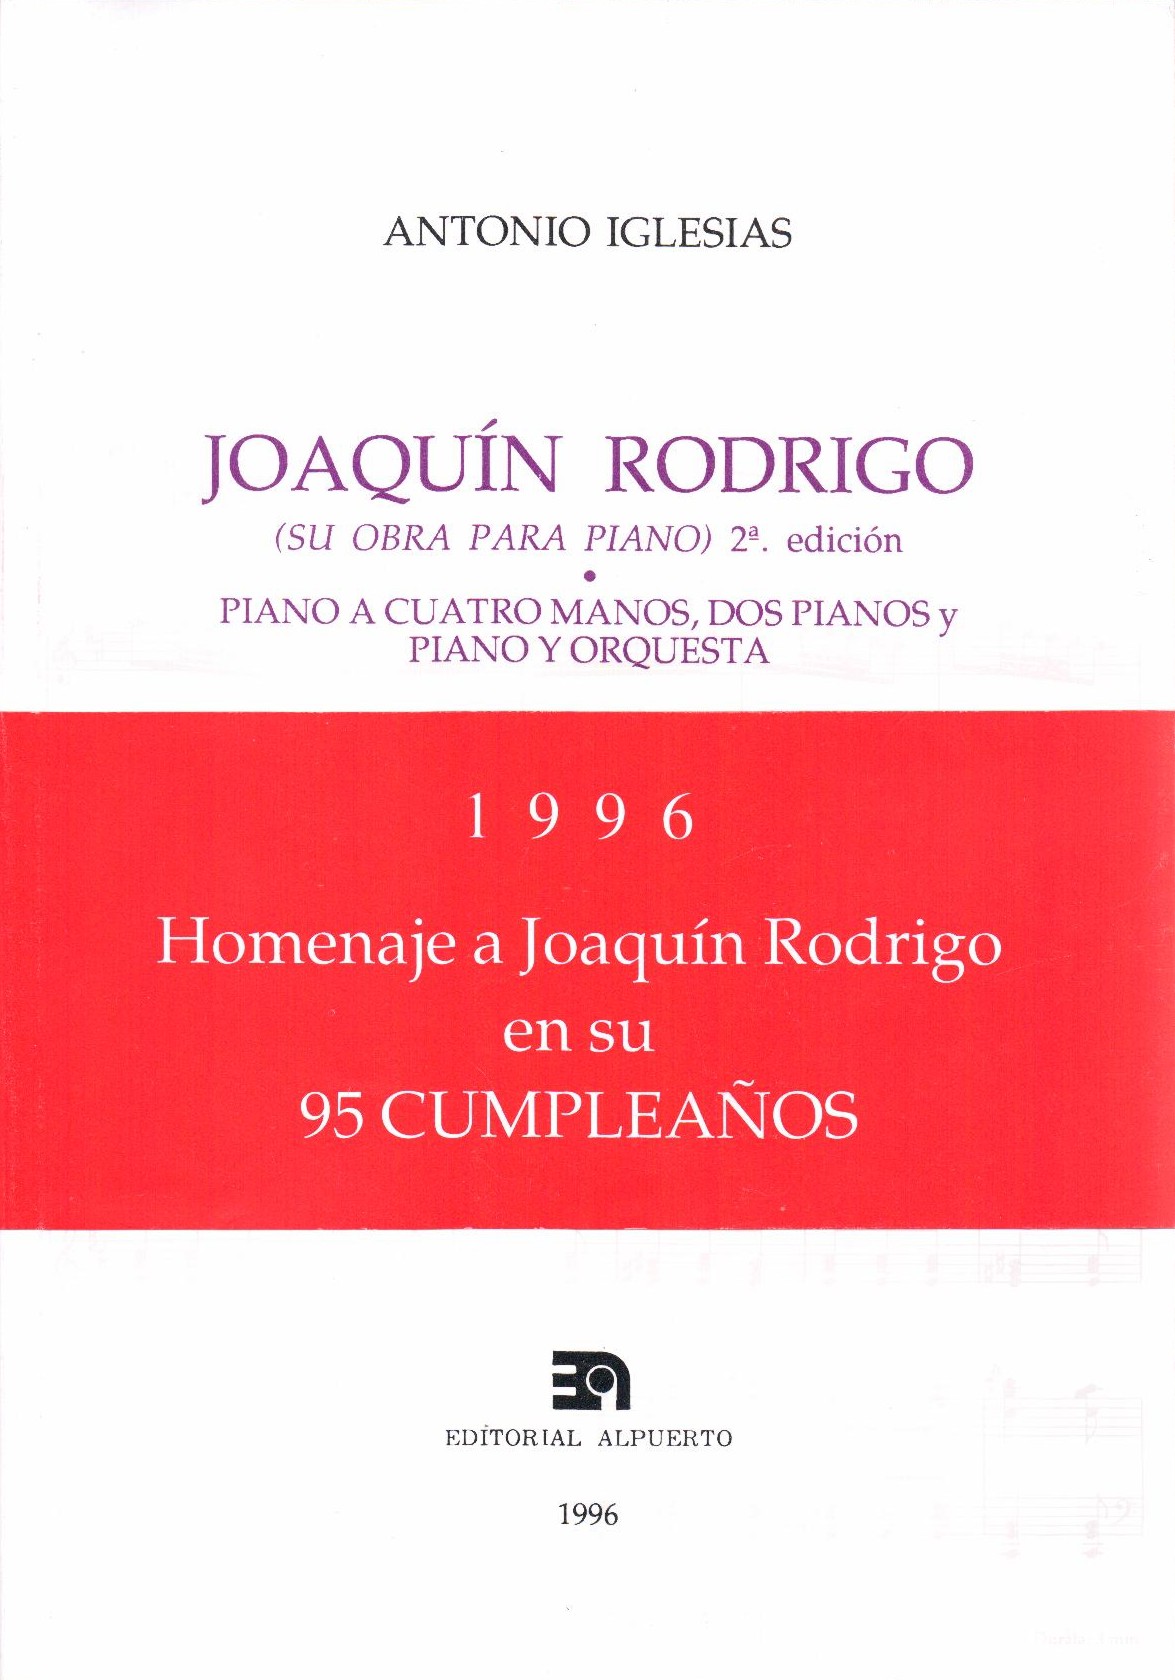 Joaquín Rodrigo
Su obra para piano